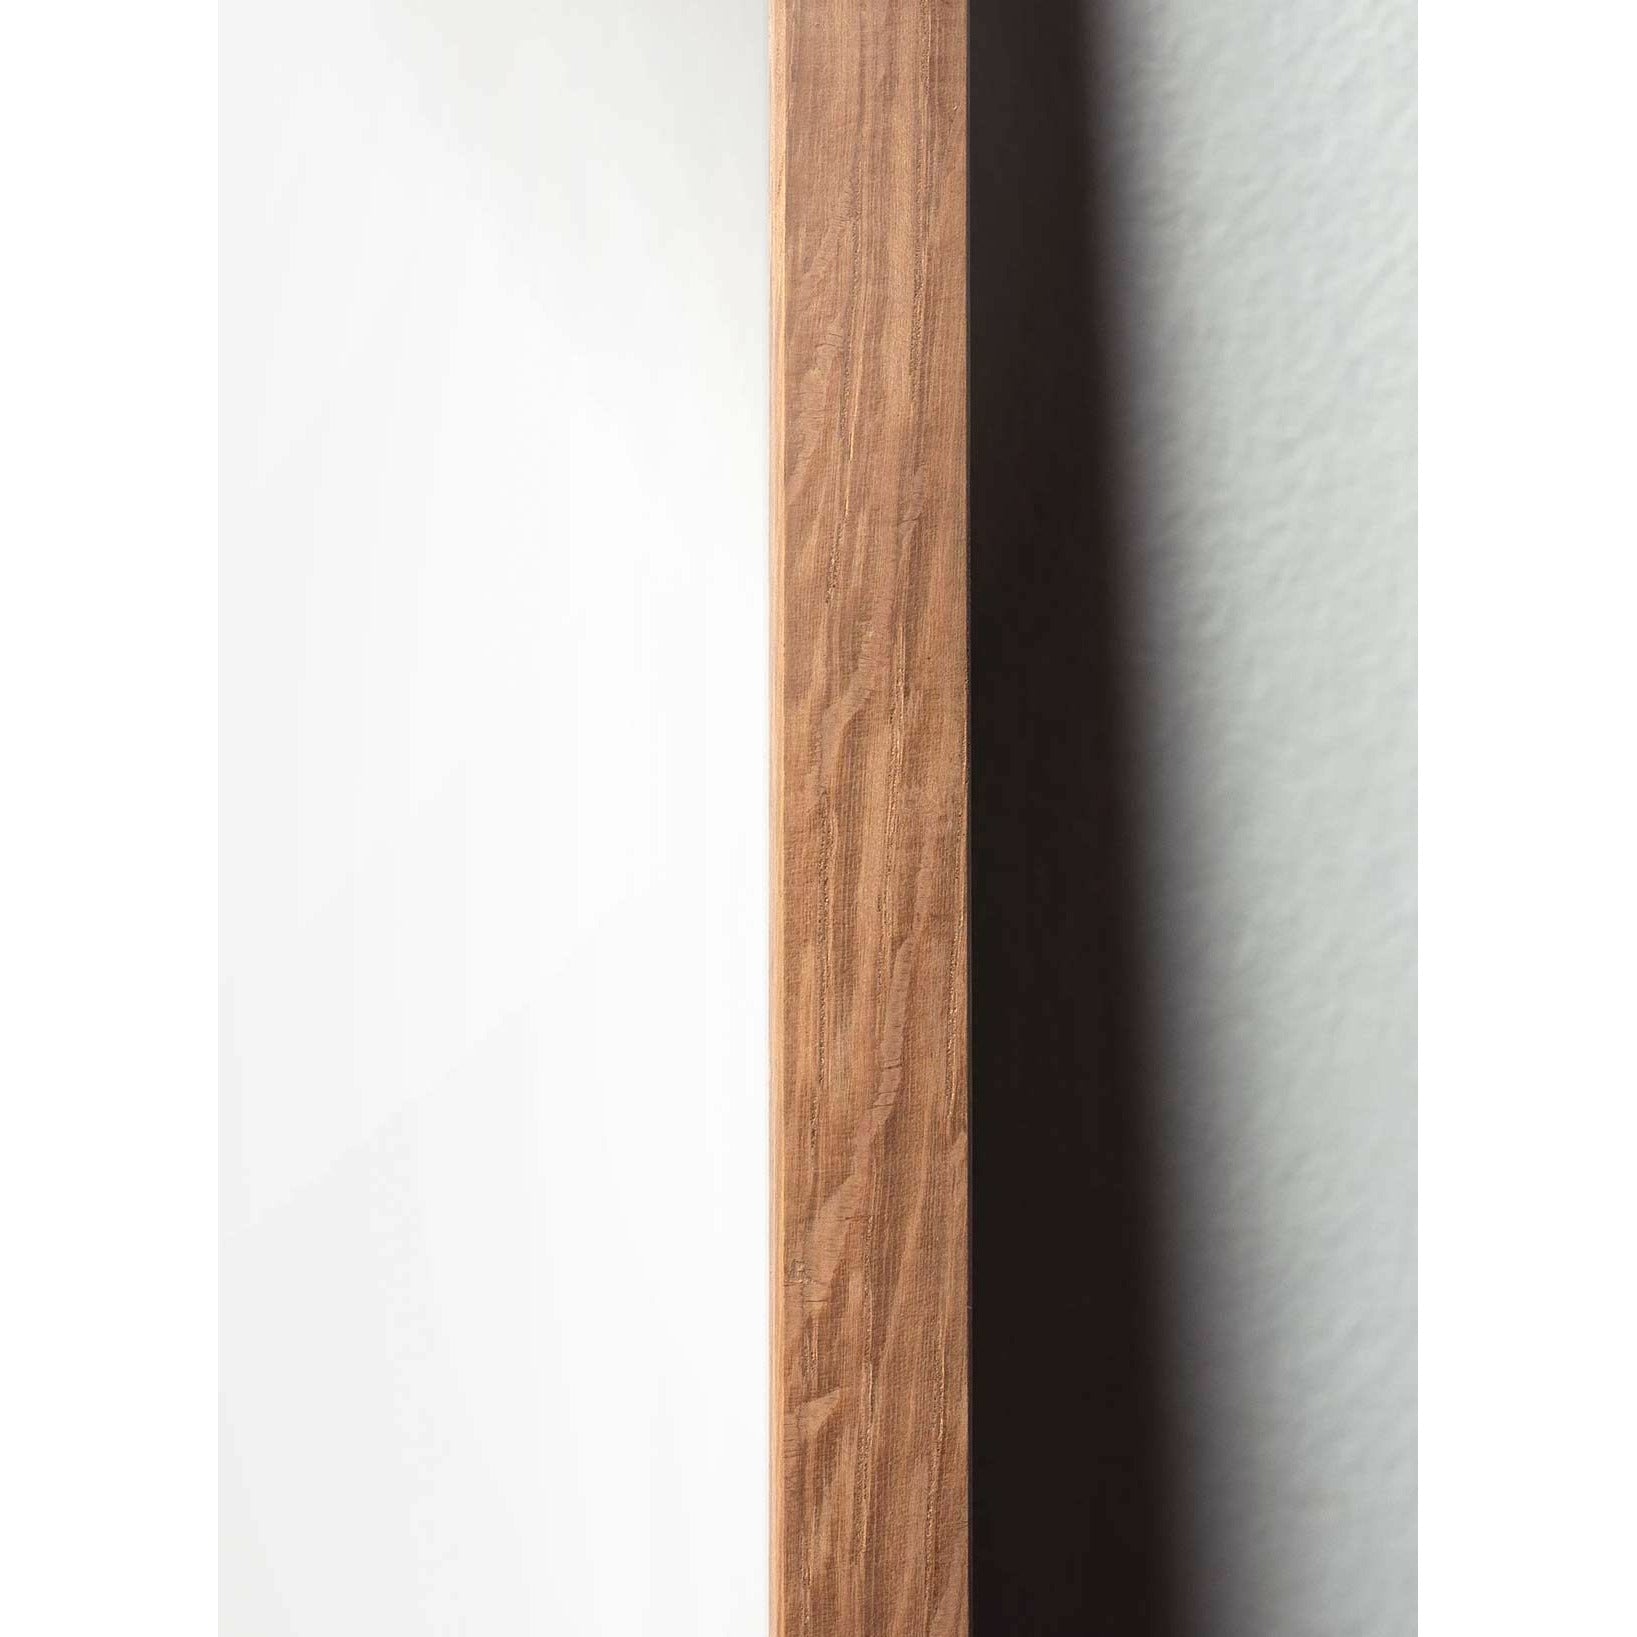 Pomysły plakat linii mrówek, rama wykonana z jasnego drewna 50x70 cm, białe tło